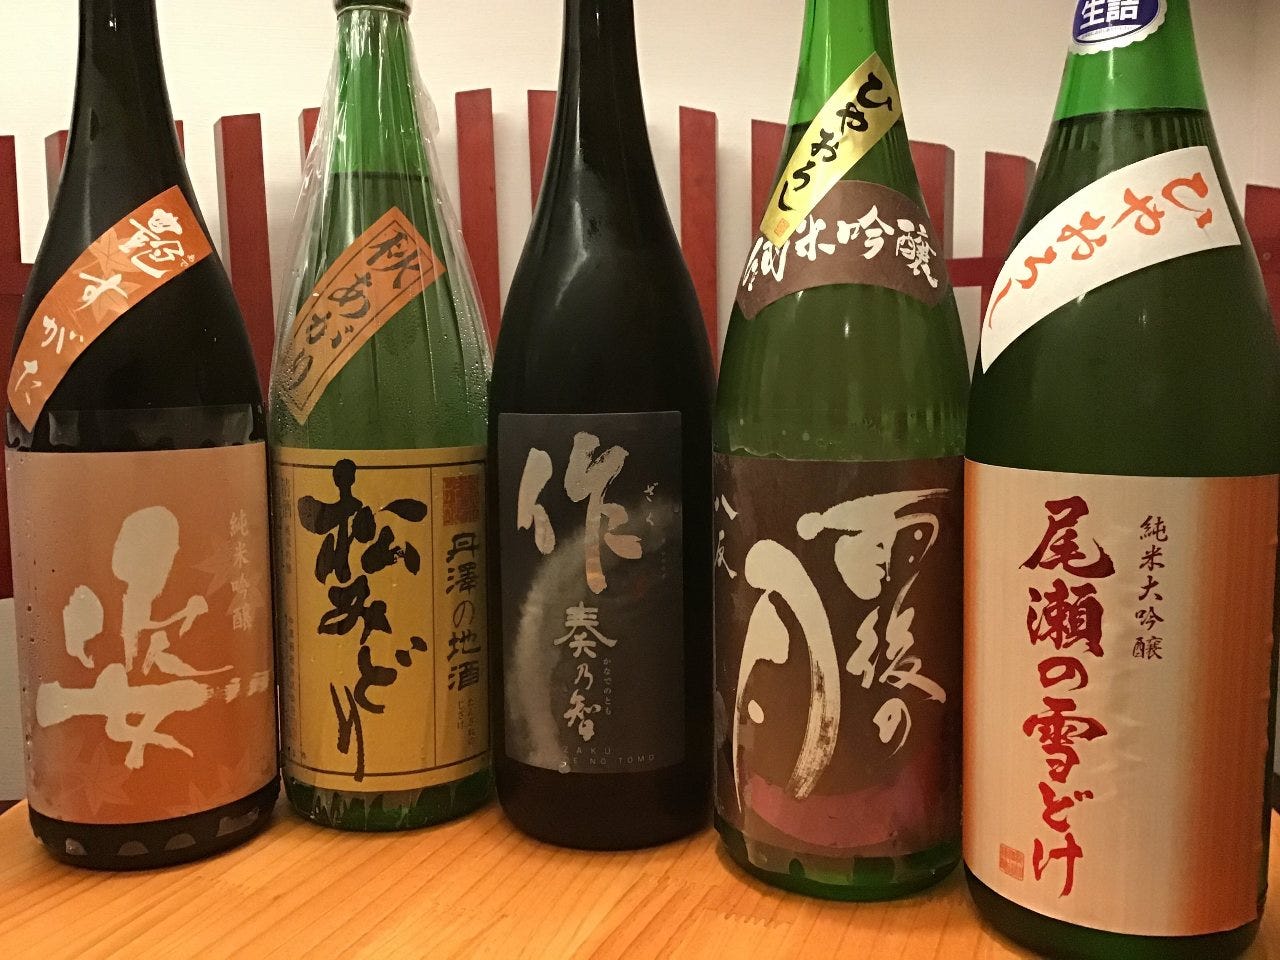 日本酒を楽しむなら「クレア」へ